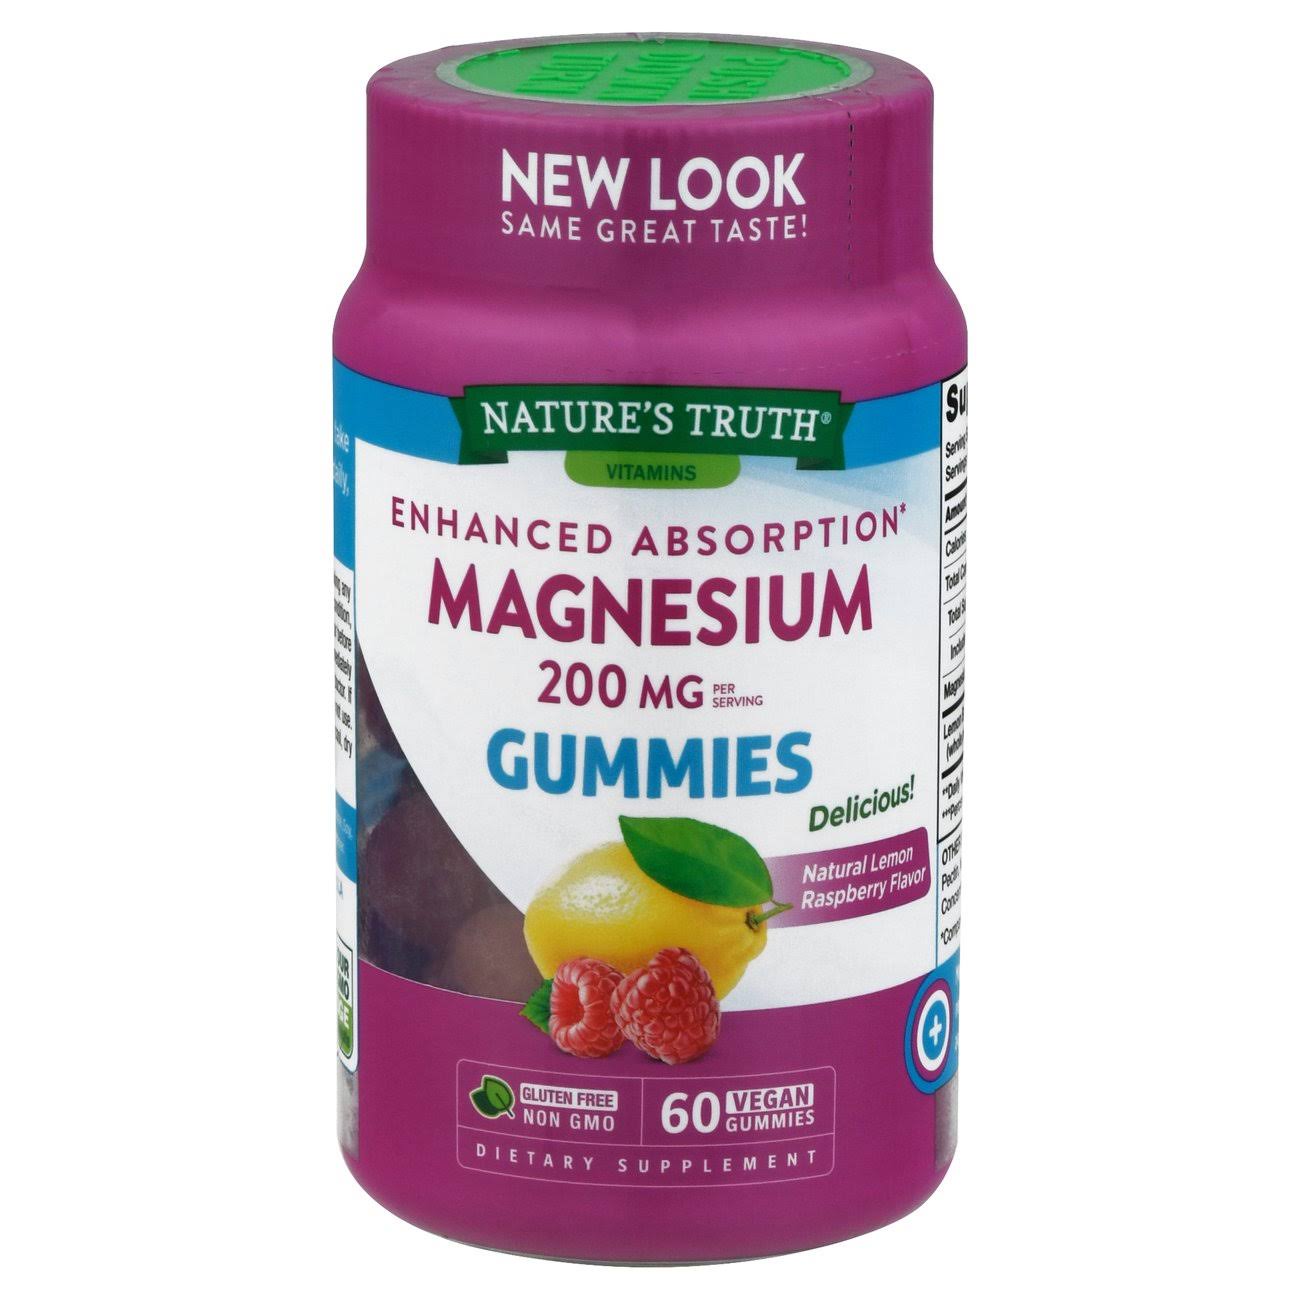 Magnesium (Natural Lemon Raspberry), 200 MG (Per serving), 60 Vegan Gummies